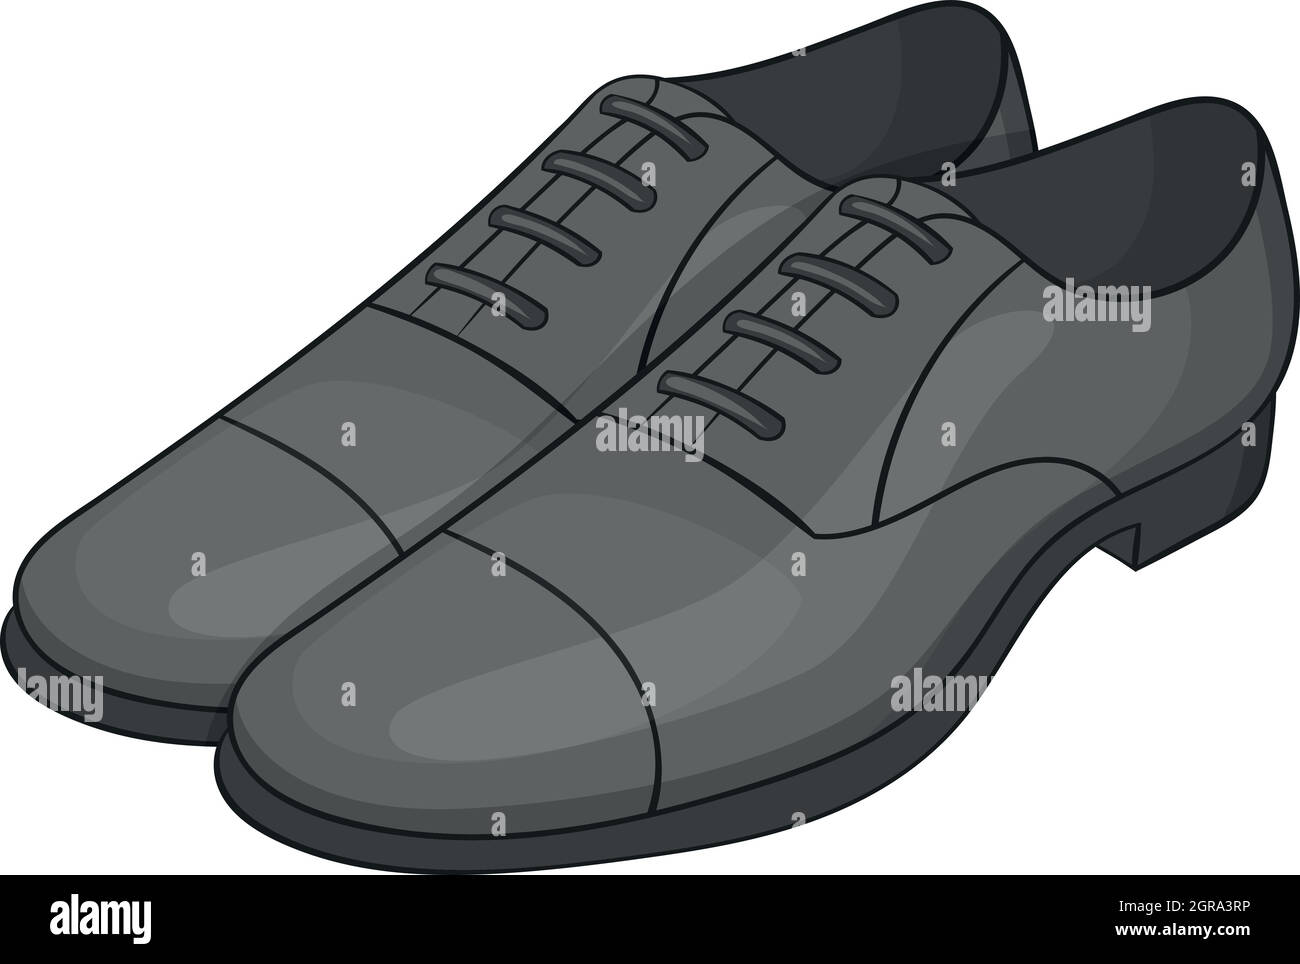 Estilo De Zapato Clásico. Conjunto De Hombre De Cuero Zapatos Negros Y Zapatos  Negros De Cuero Mujer Ilustraciones svg, vectoriales, clip art vectorizado  libre de derechos. Image 46959388